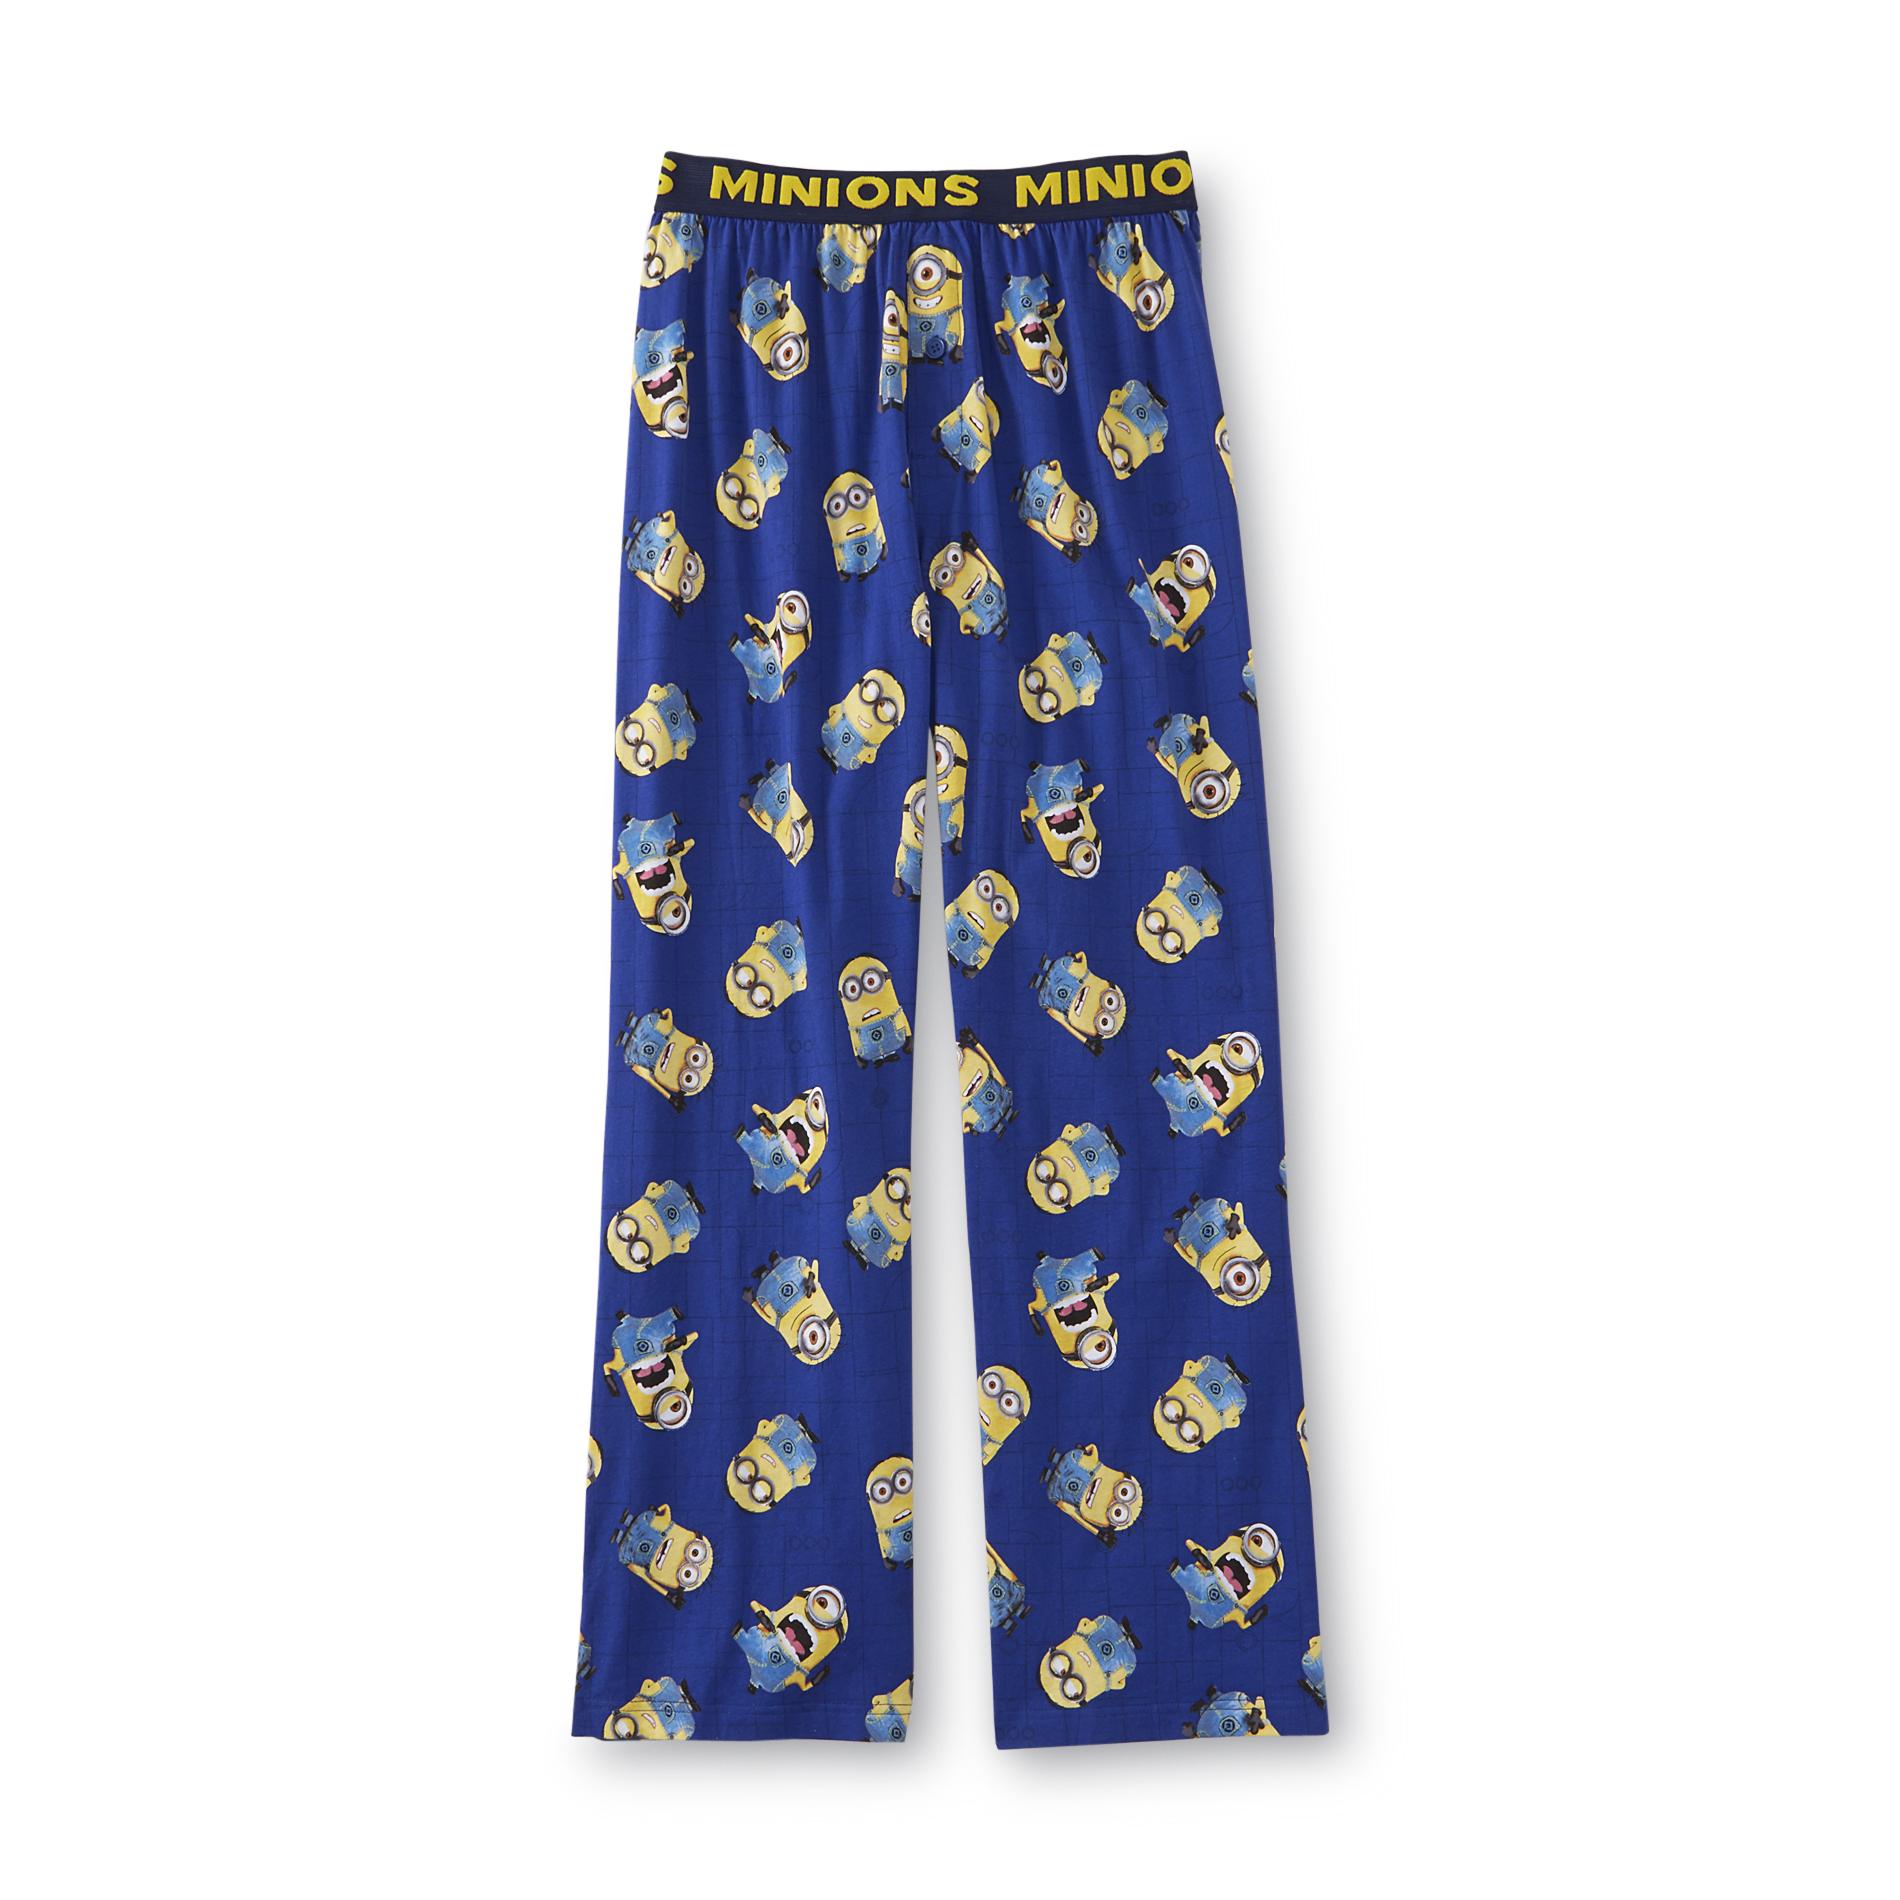 Illumination Entertainment Men's Pajama Pants - Minions